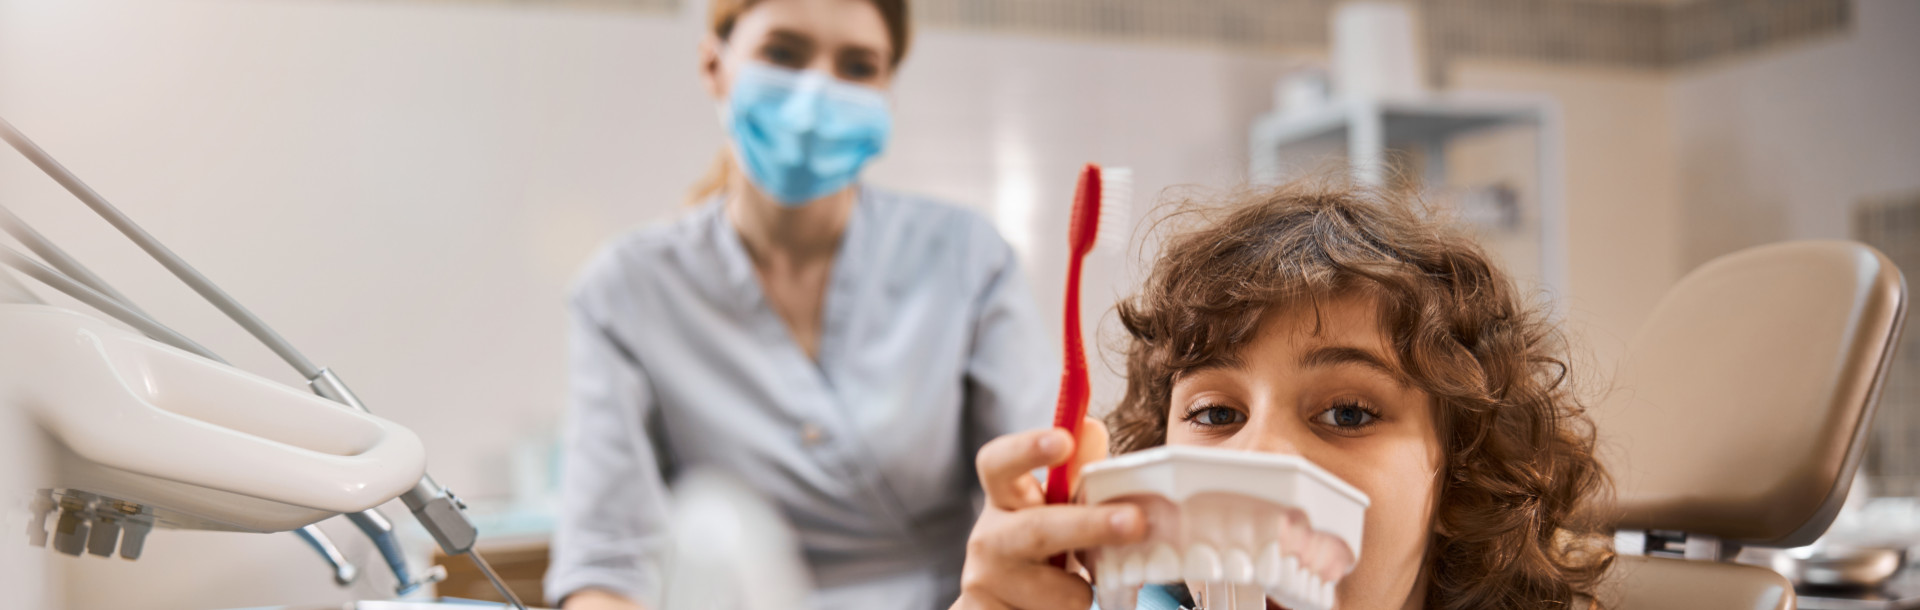 Antibióticos en la infancia y salud dent... - Siegfried Rhein Sigfrid